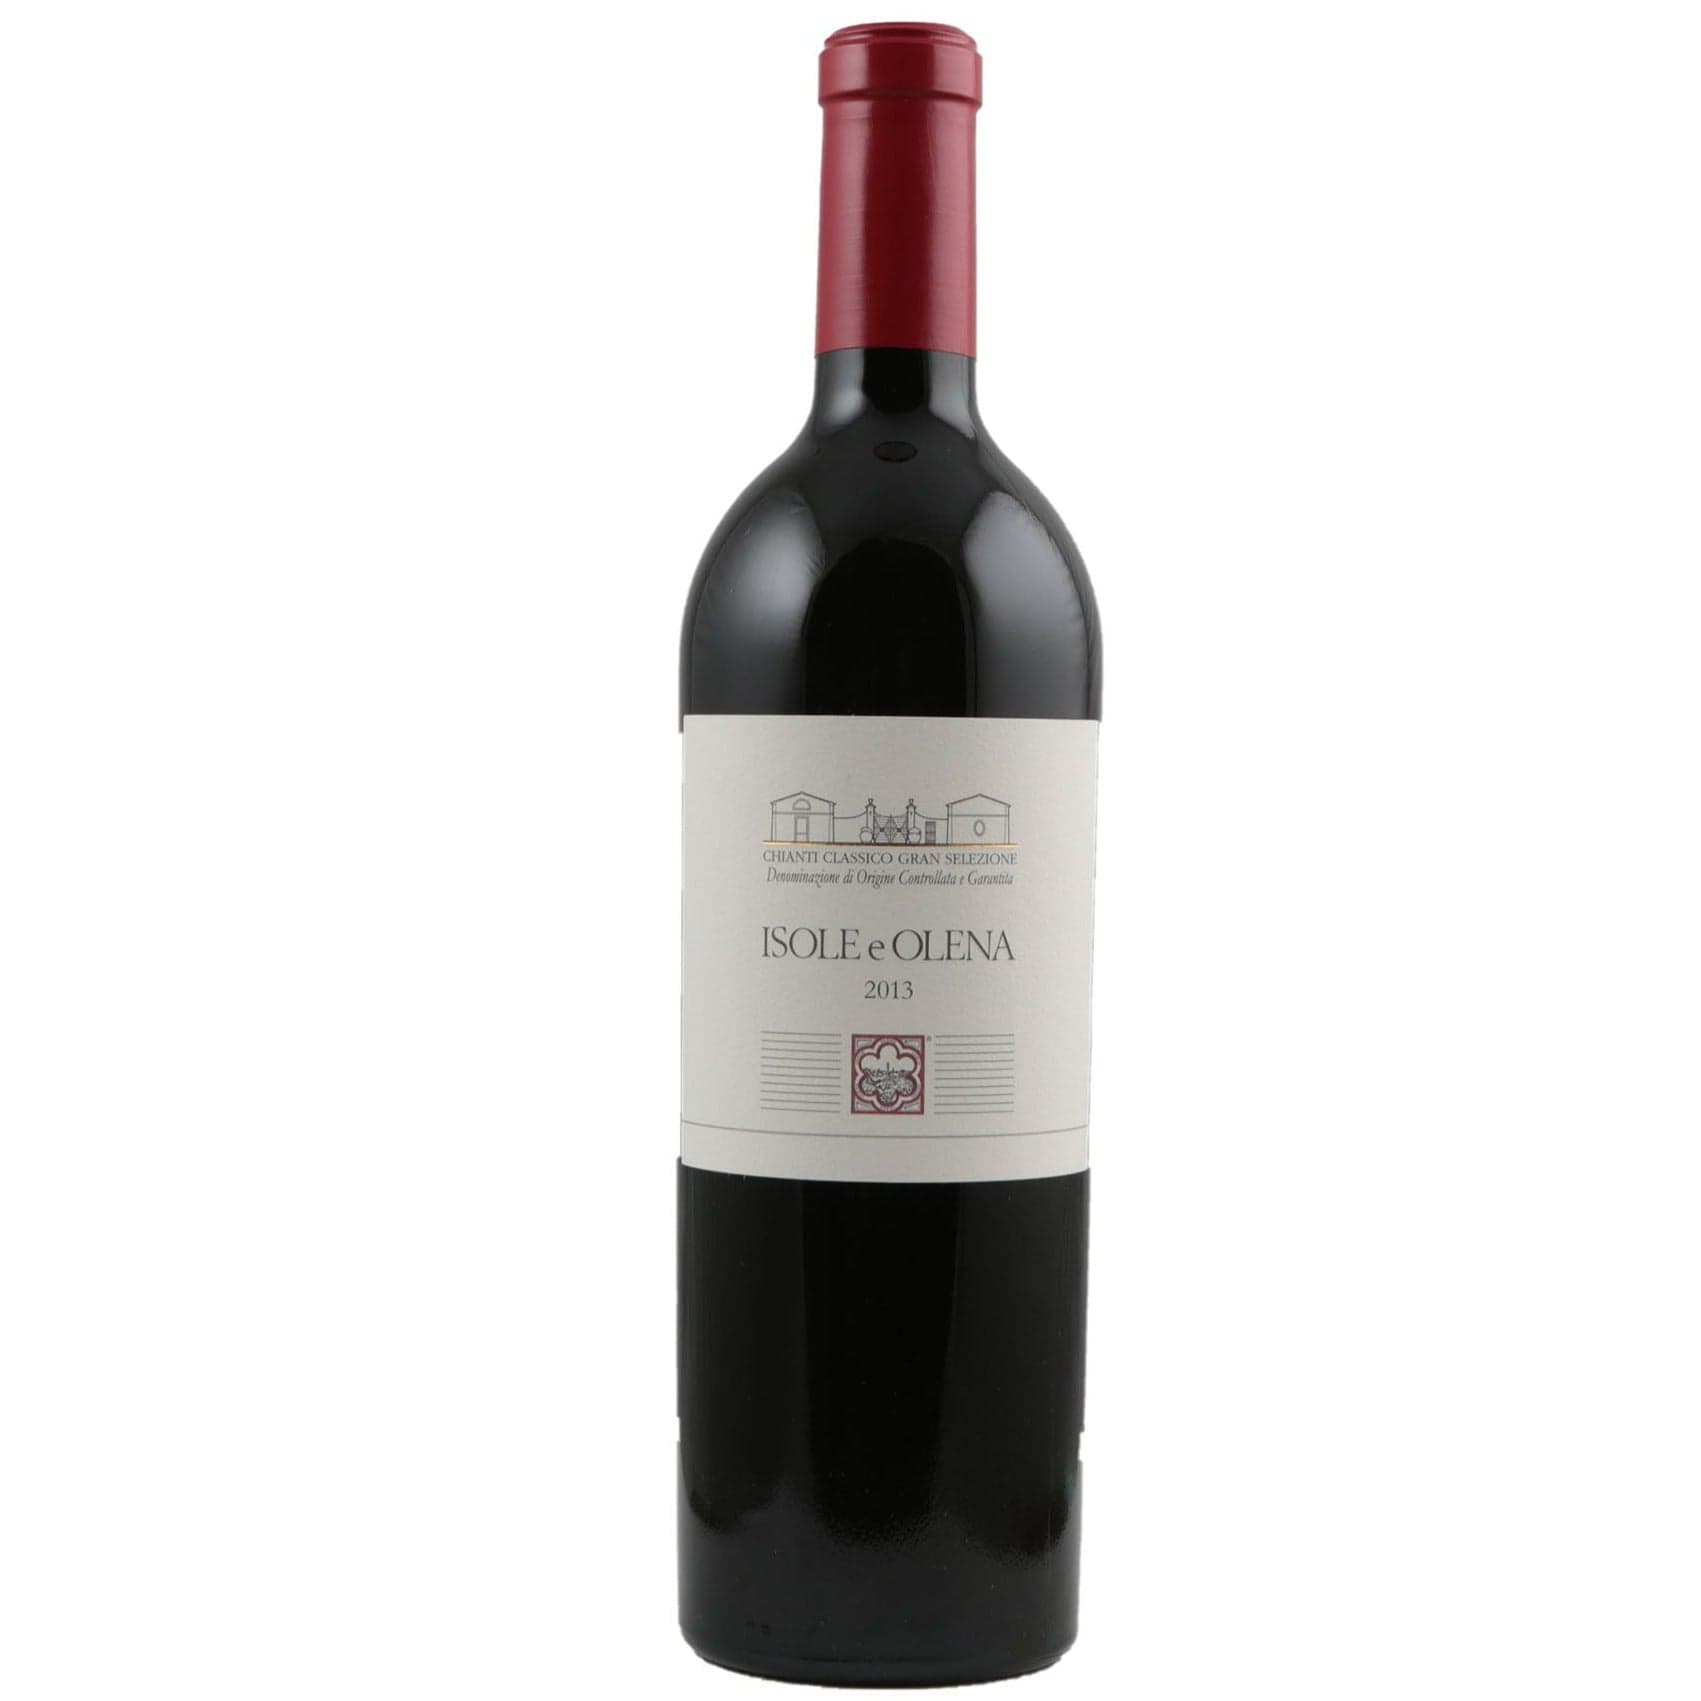 Single bottle of Red wine Isole e Olena, Chianti Classico Gran Selezione DOCG, Chianti Classico, 2013 80% Sangiovese, 12% Cabernet Franc & 8% Syrah